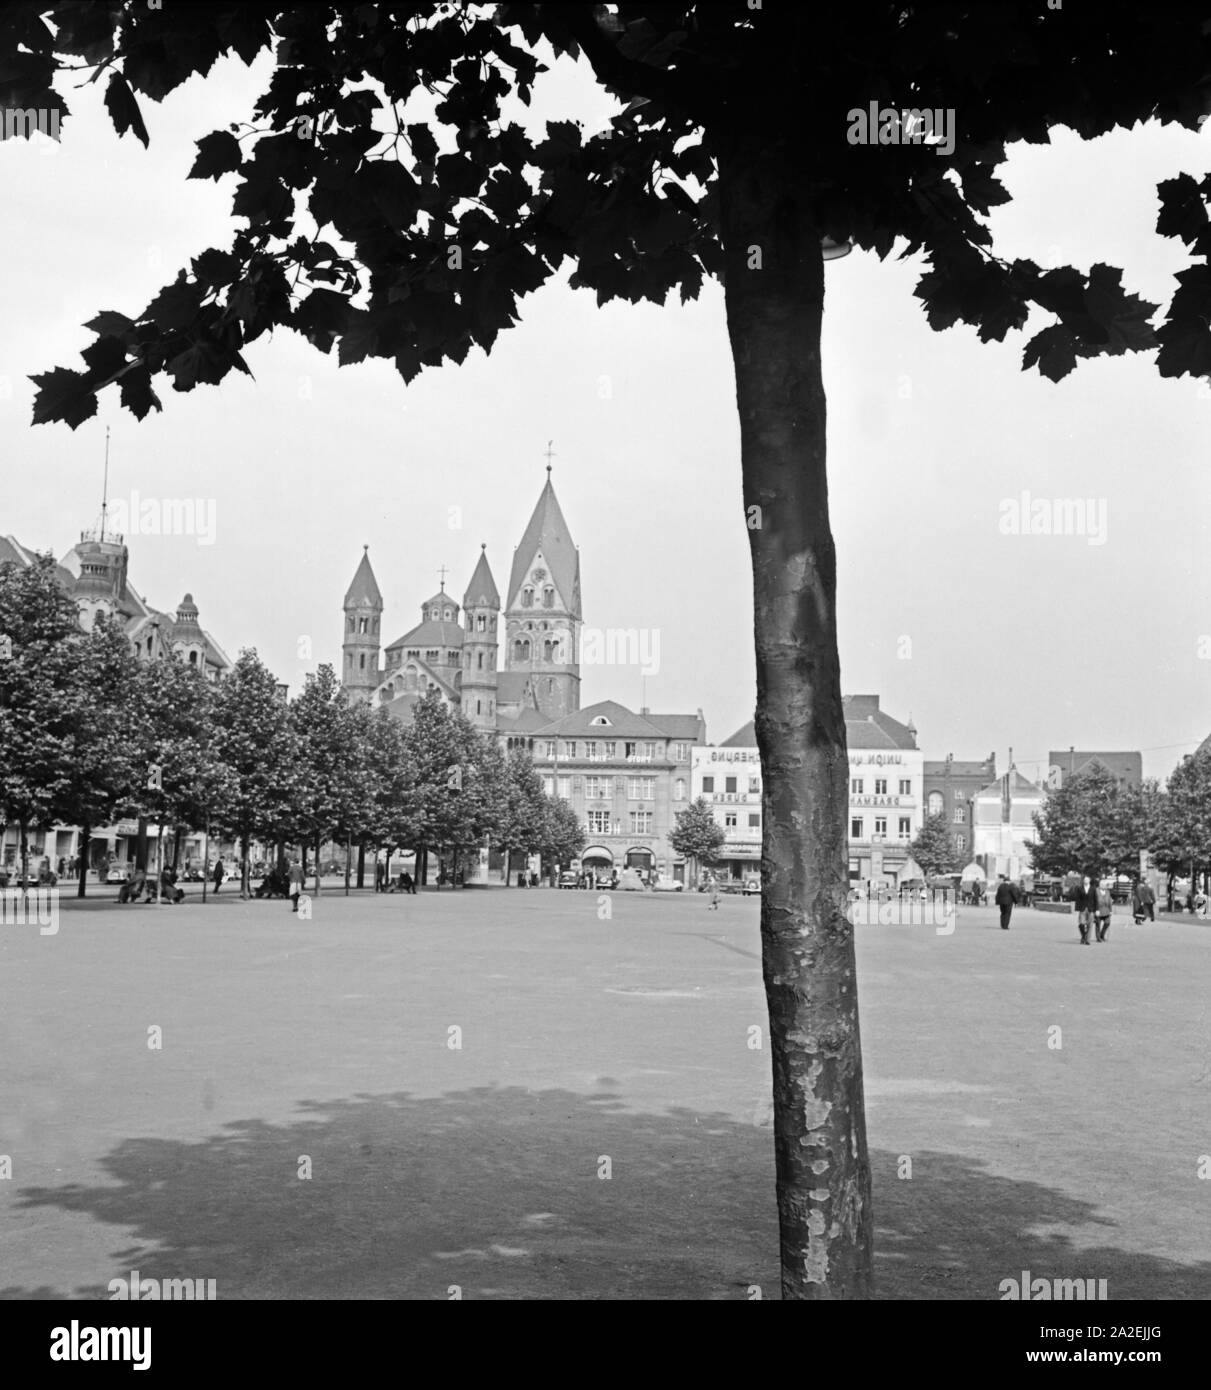 Der zentrale Platz in Köln, der Neumarkt, mit der Kirche St. Aposteln im Hintergrund, 1930er Jahre Stock Photo